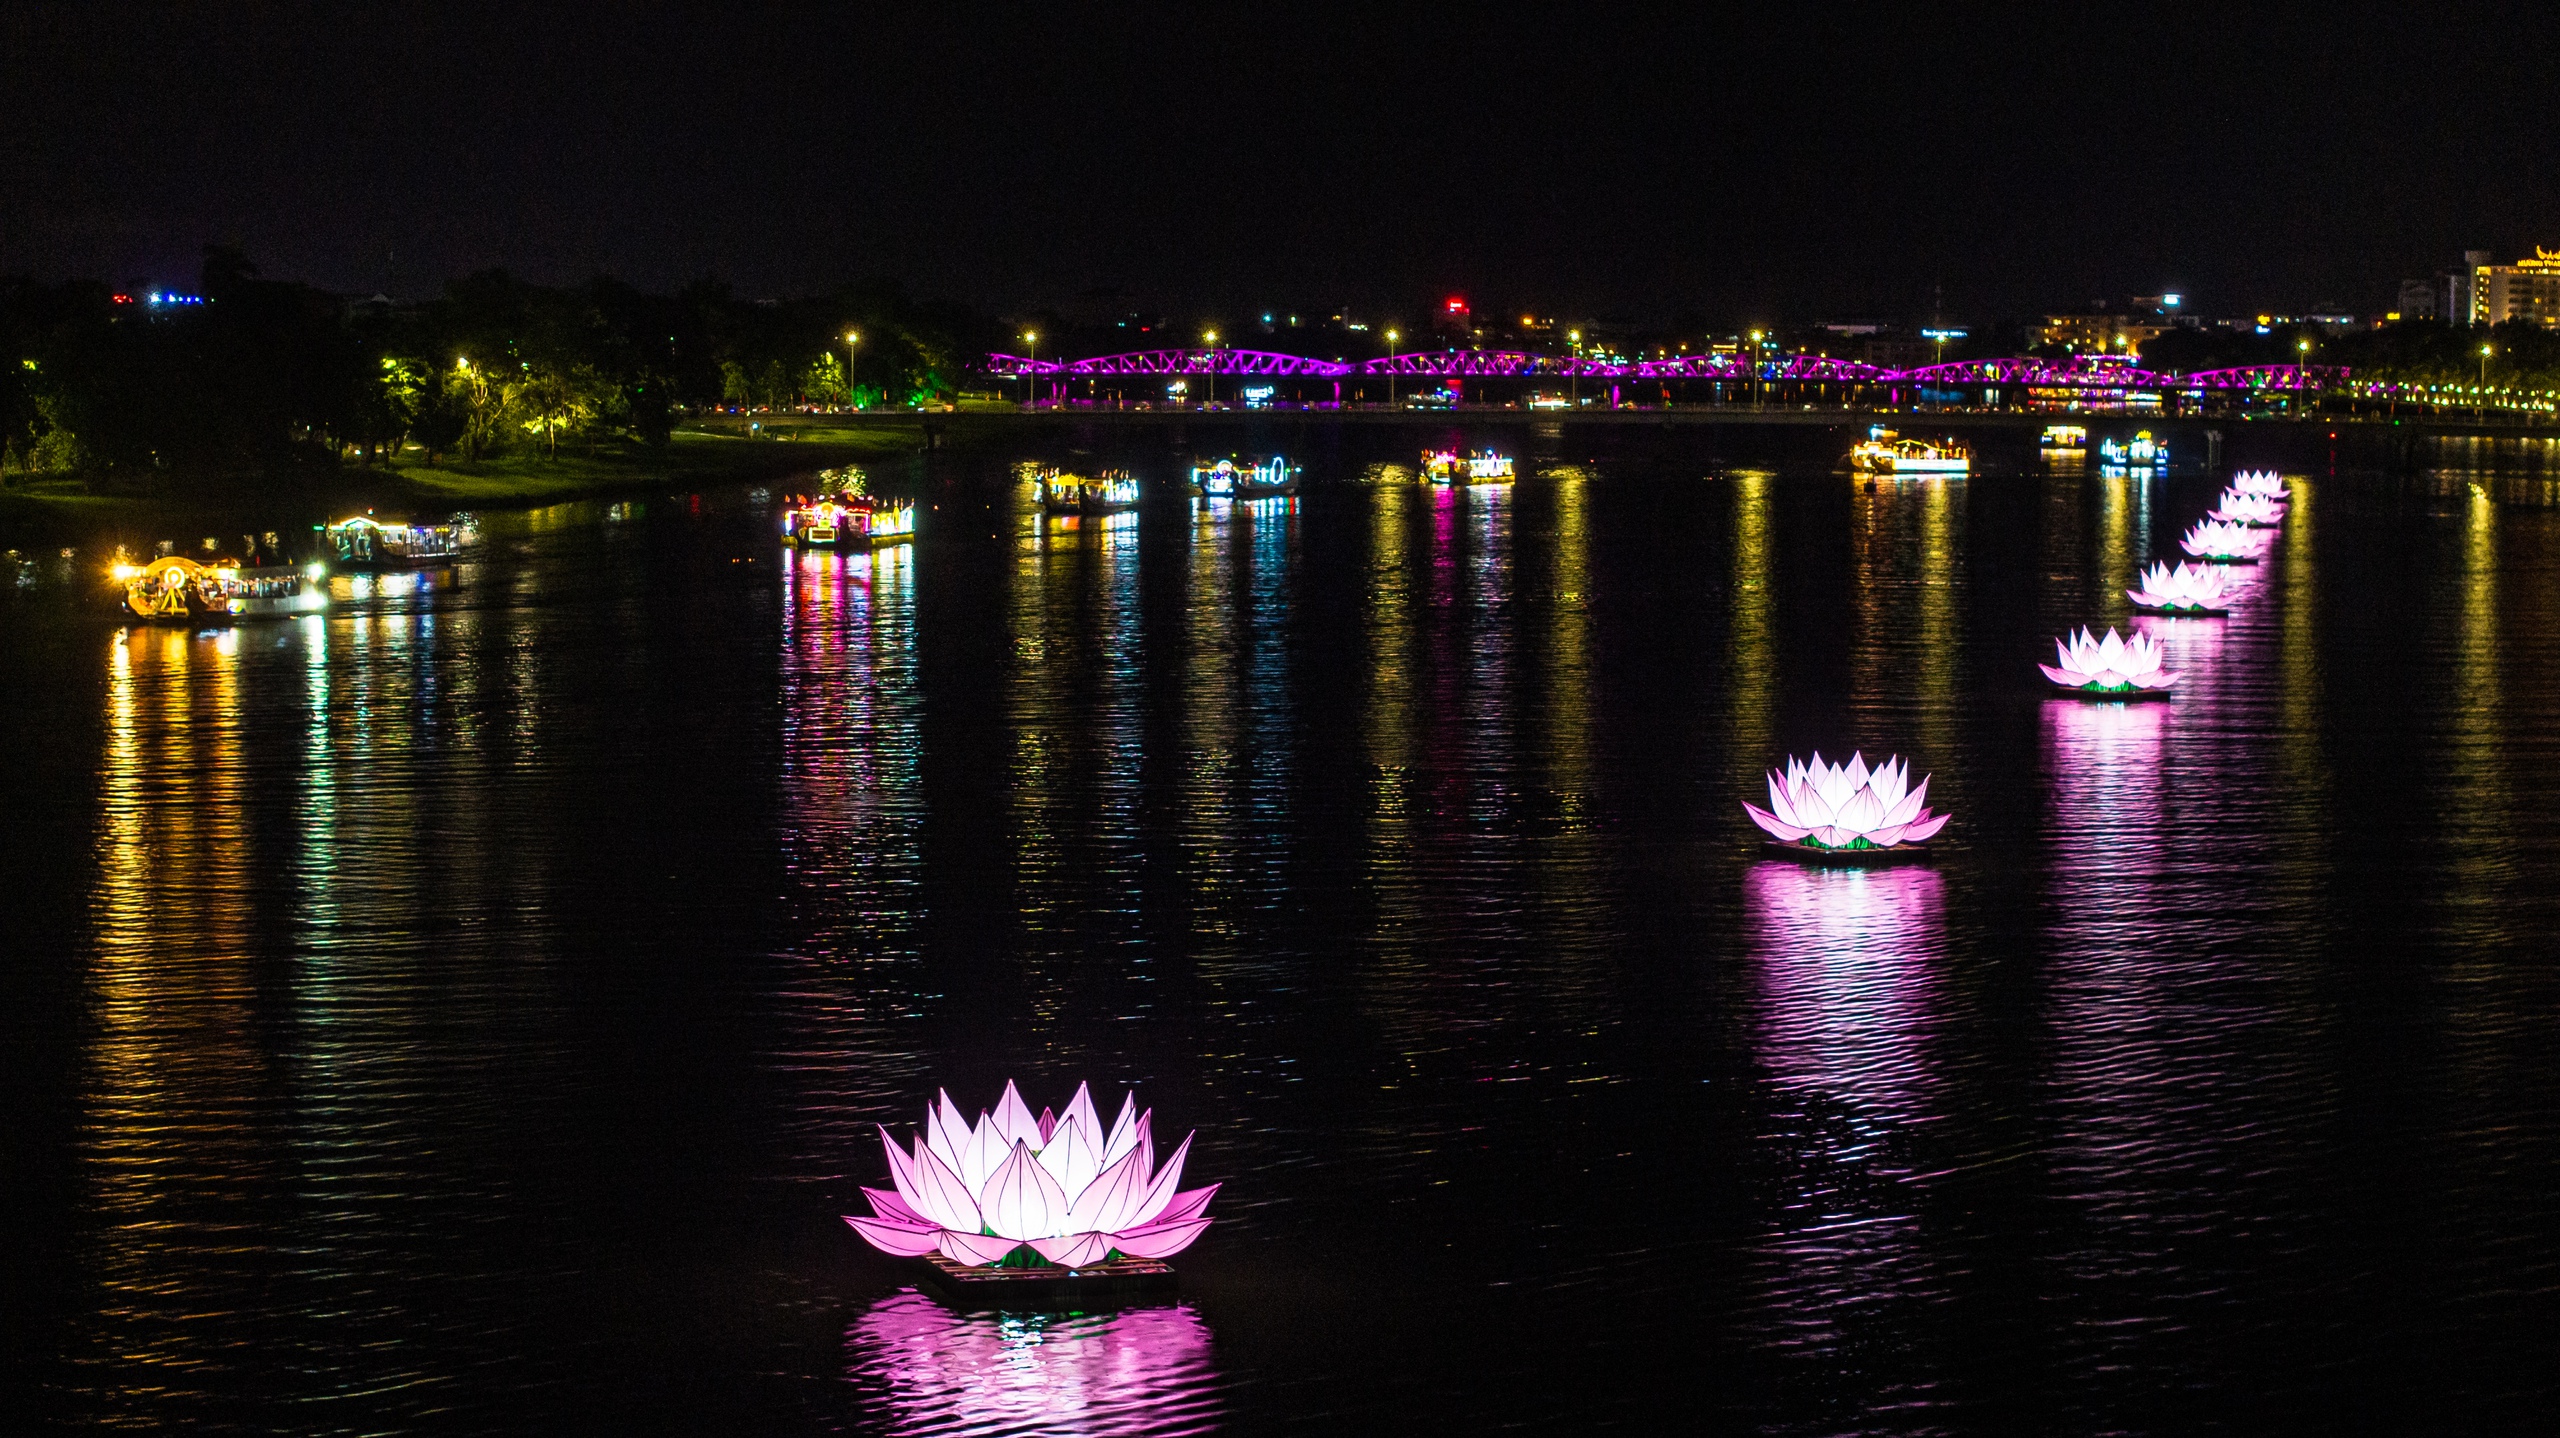 Đoàn diễu hành đi qua 7 tòa sen hồng thắp sáng trên sông Hương